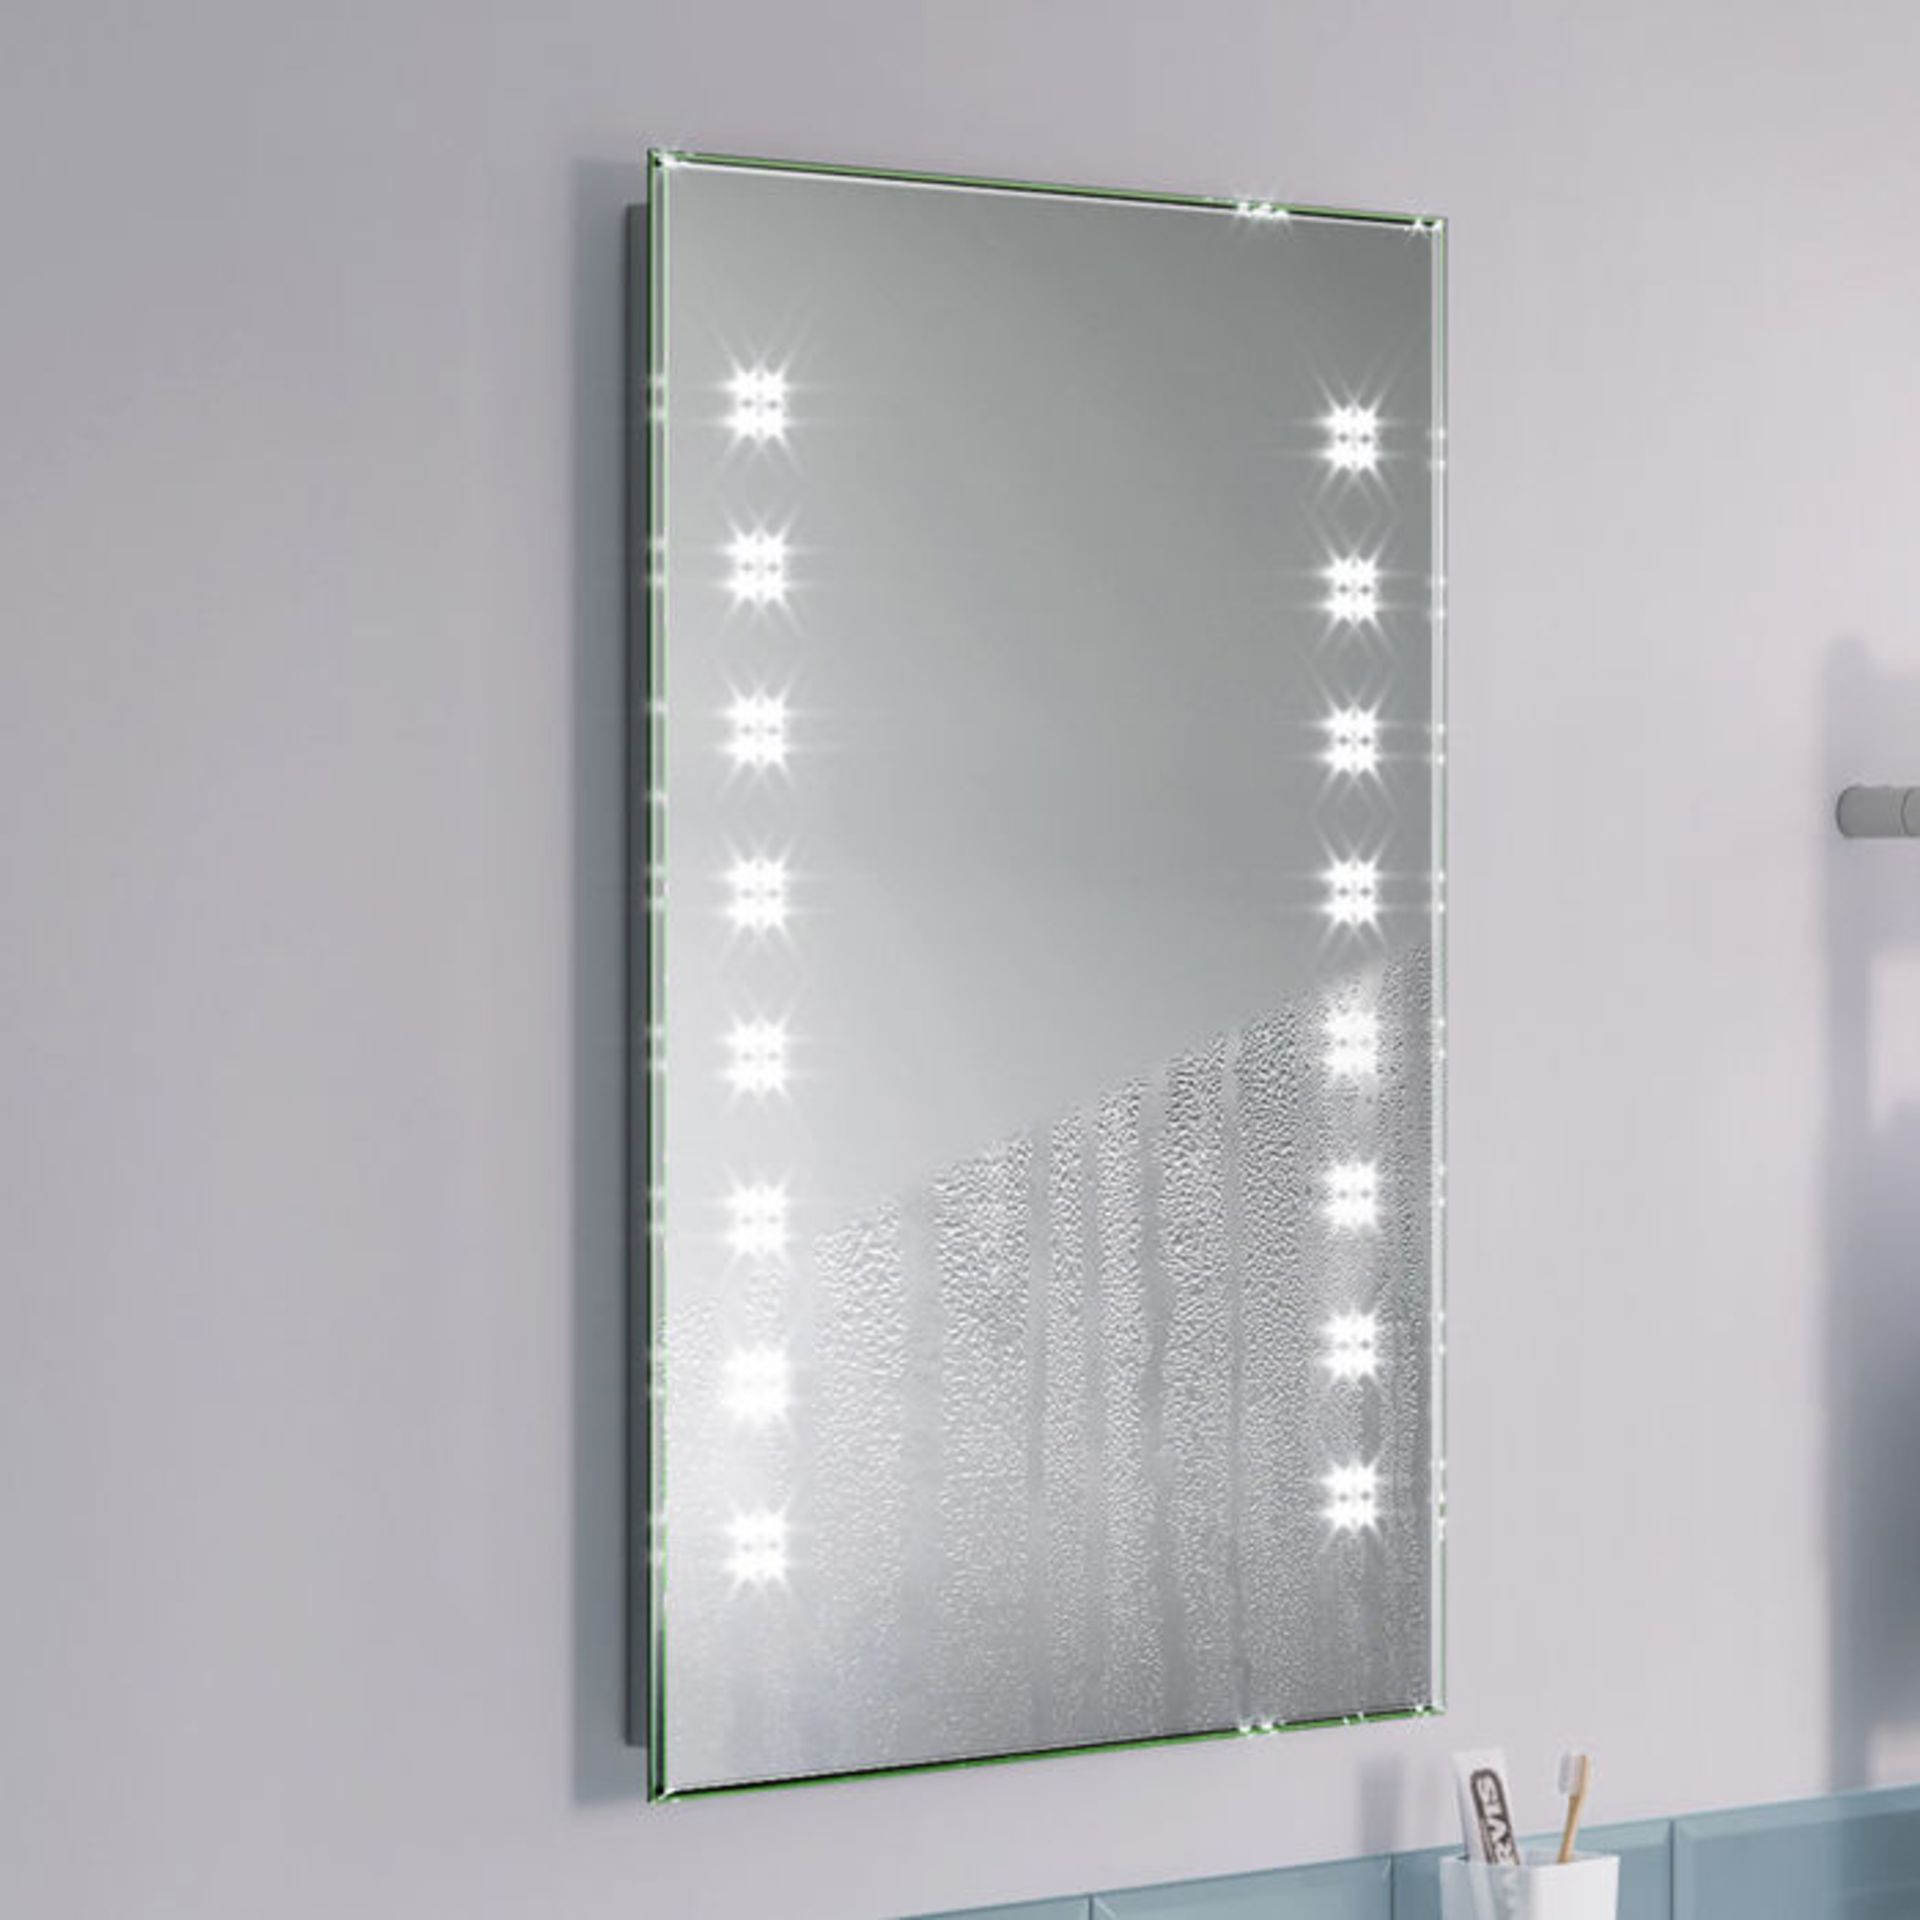 (H17) 700x500mm Galactic Designer Illuminated LED Mirror RRP £324.99 Energy efficient LED lighting - Image 3 of 5